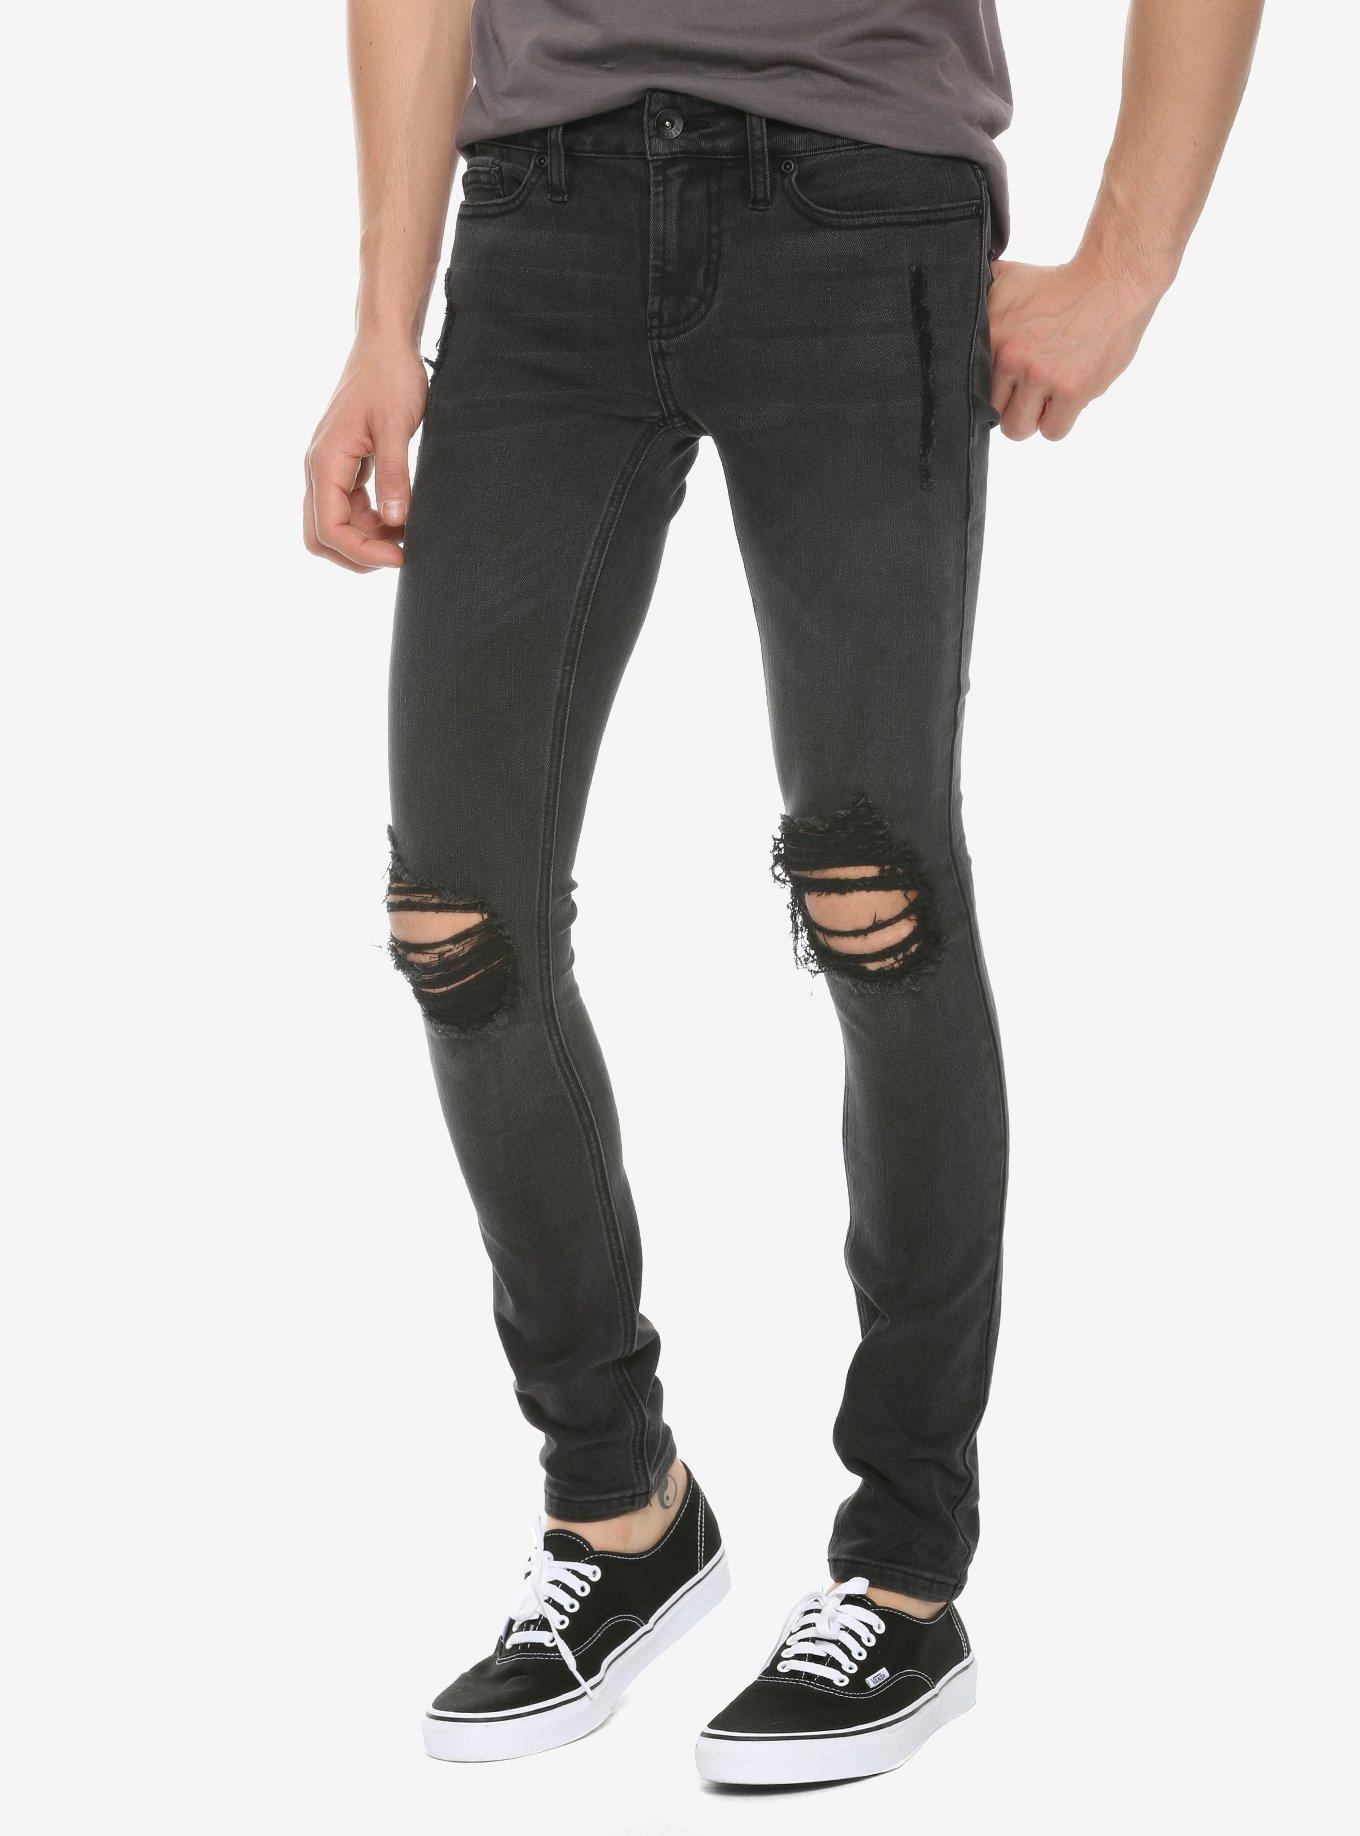 HT Denim Black Washed & Destructed Super Skinny Jeans, BLACK, hi-res